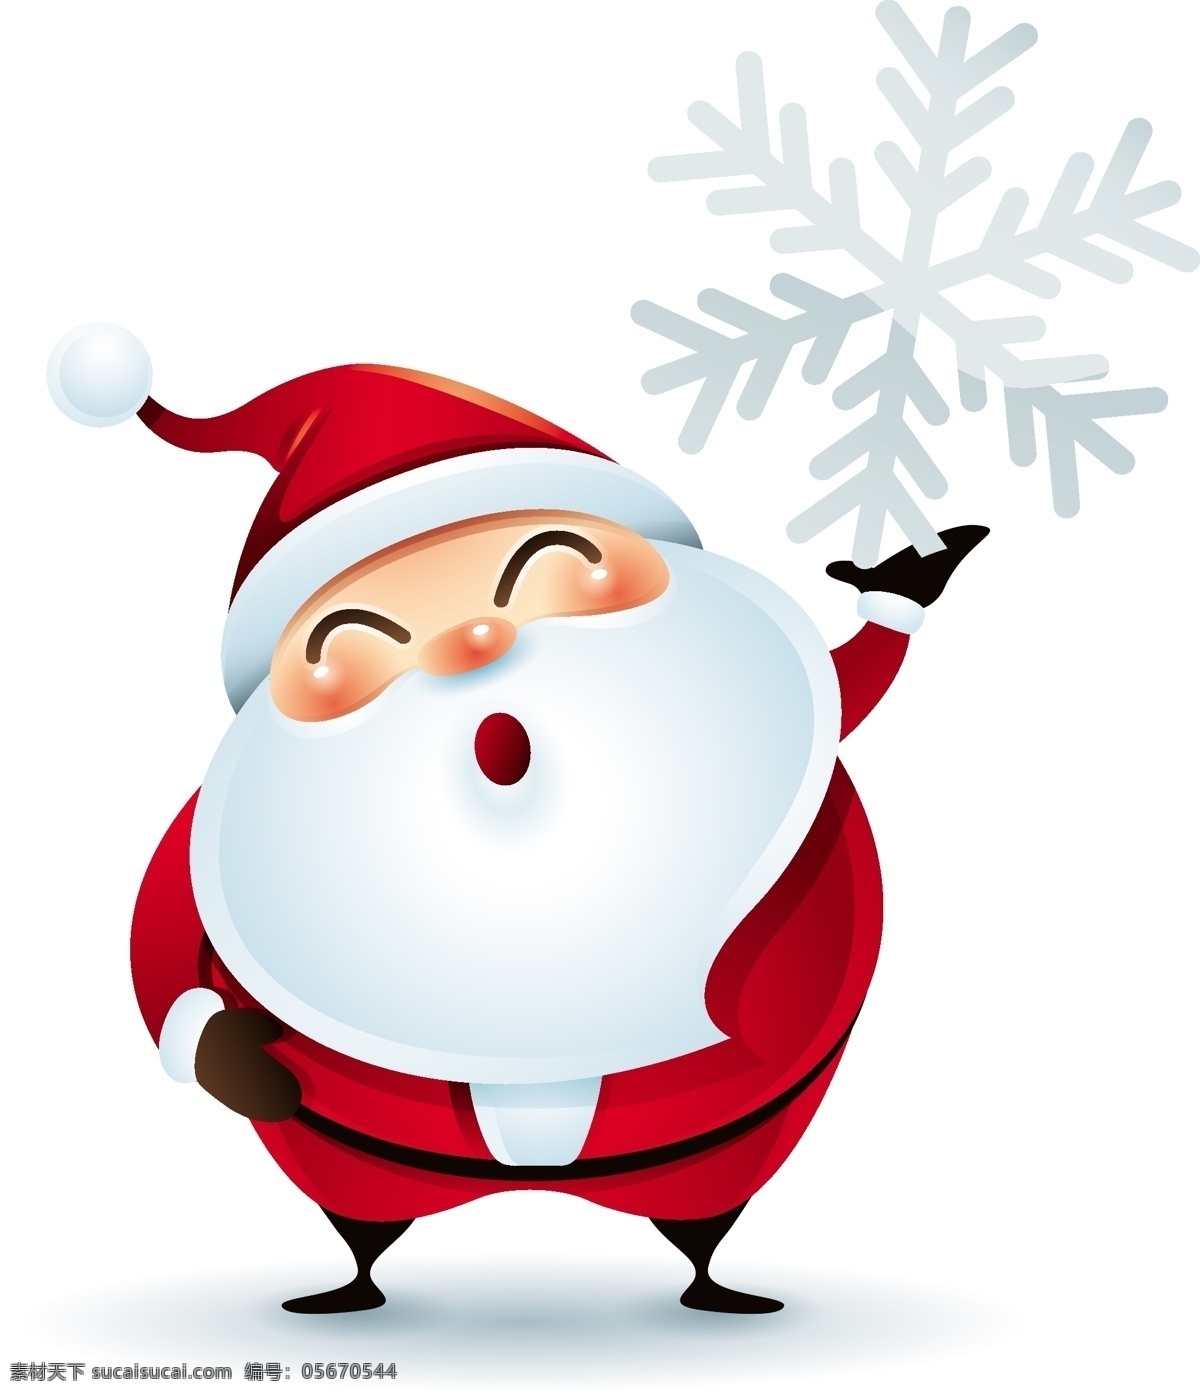 雪花 圣诞节 老人 矢量 白色 可爱 手绘 红色 白胡子 卡通 人物 形象 节日 装饰